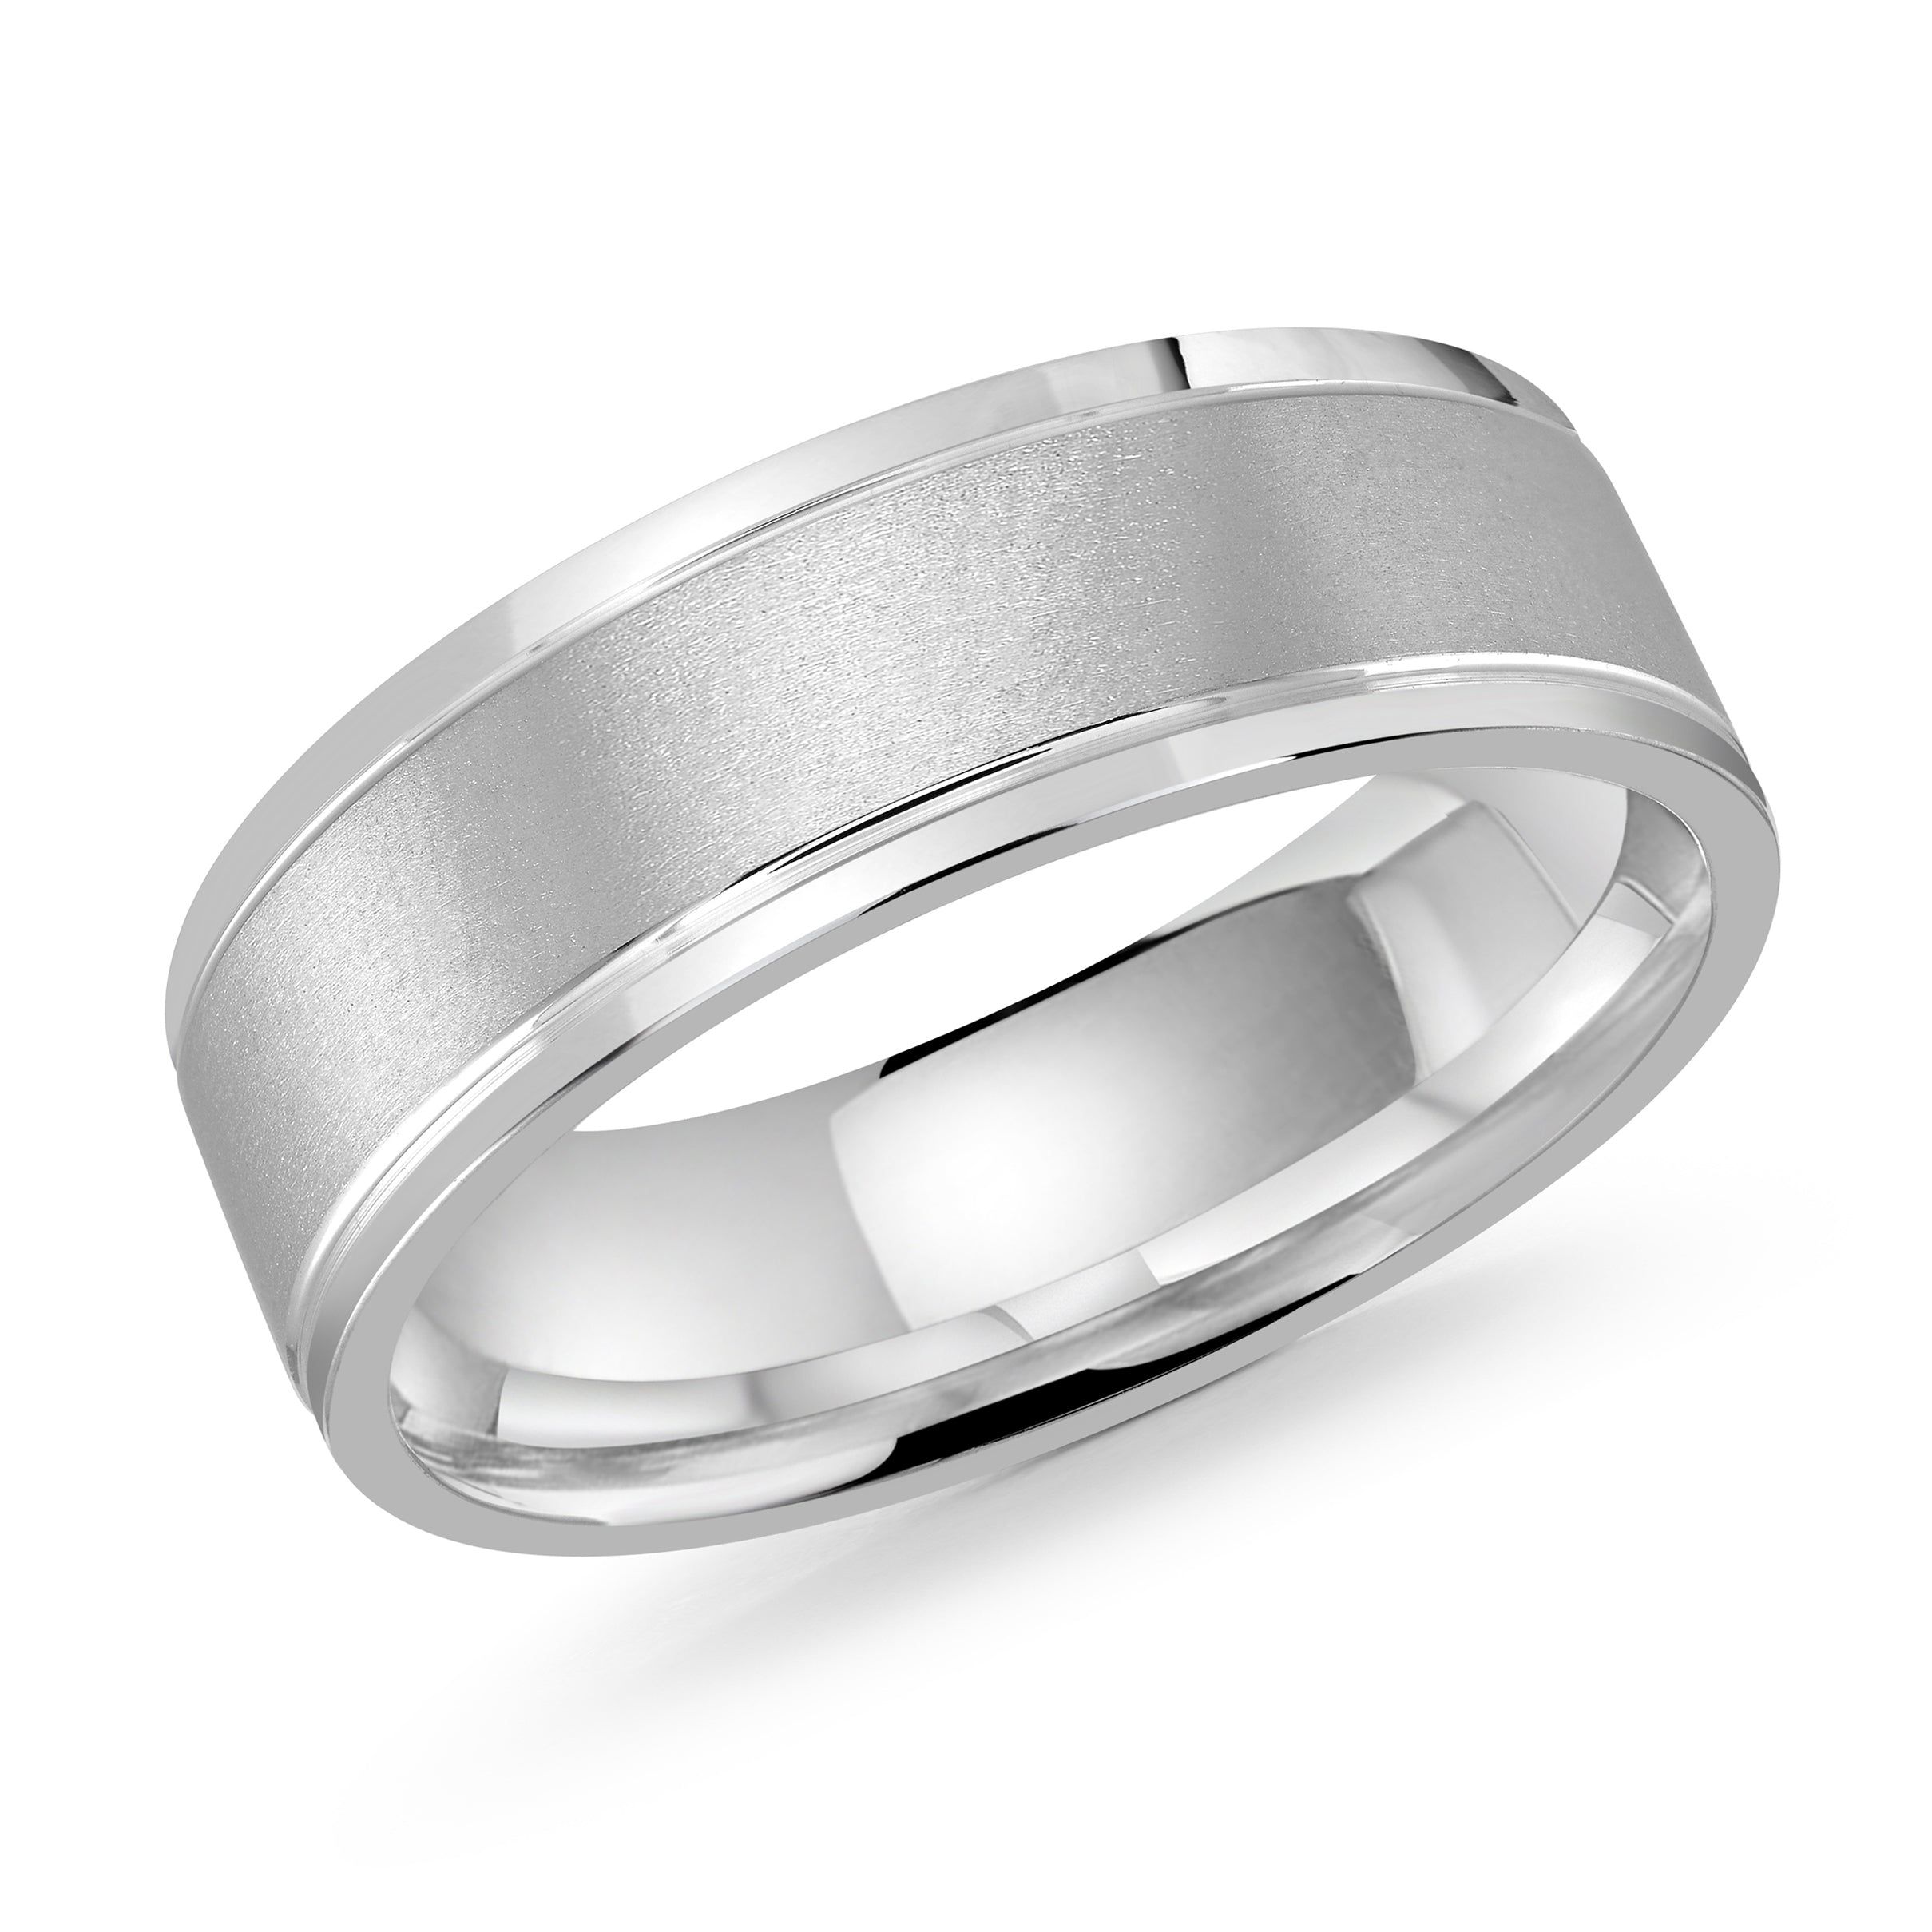 Men's 7mm Satin-Finish Polished Edge Wedding Ring